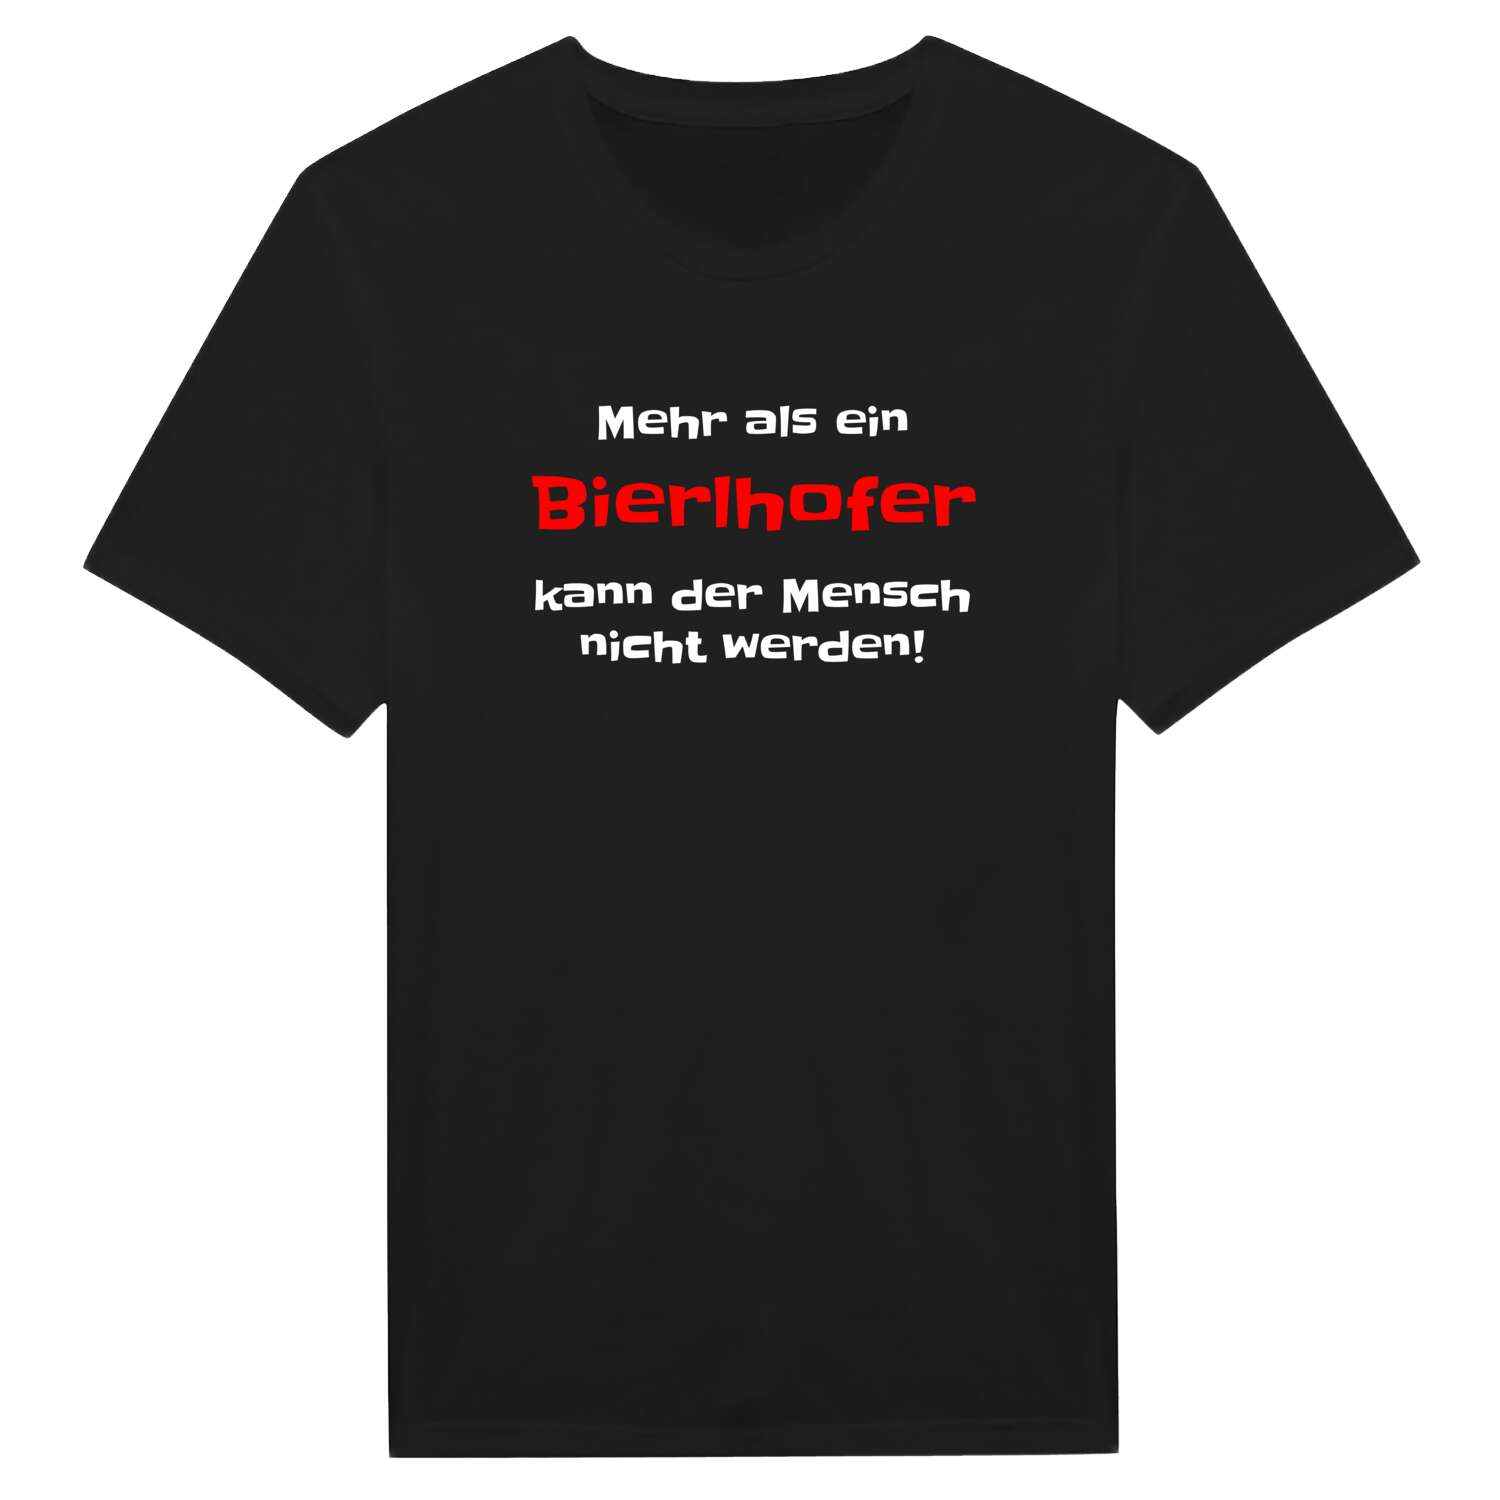 Bierlhof T-Shirt »Mehr als ein«